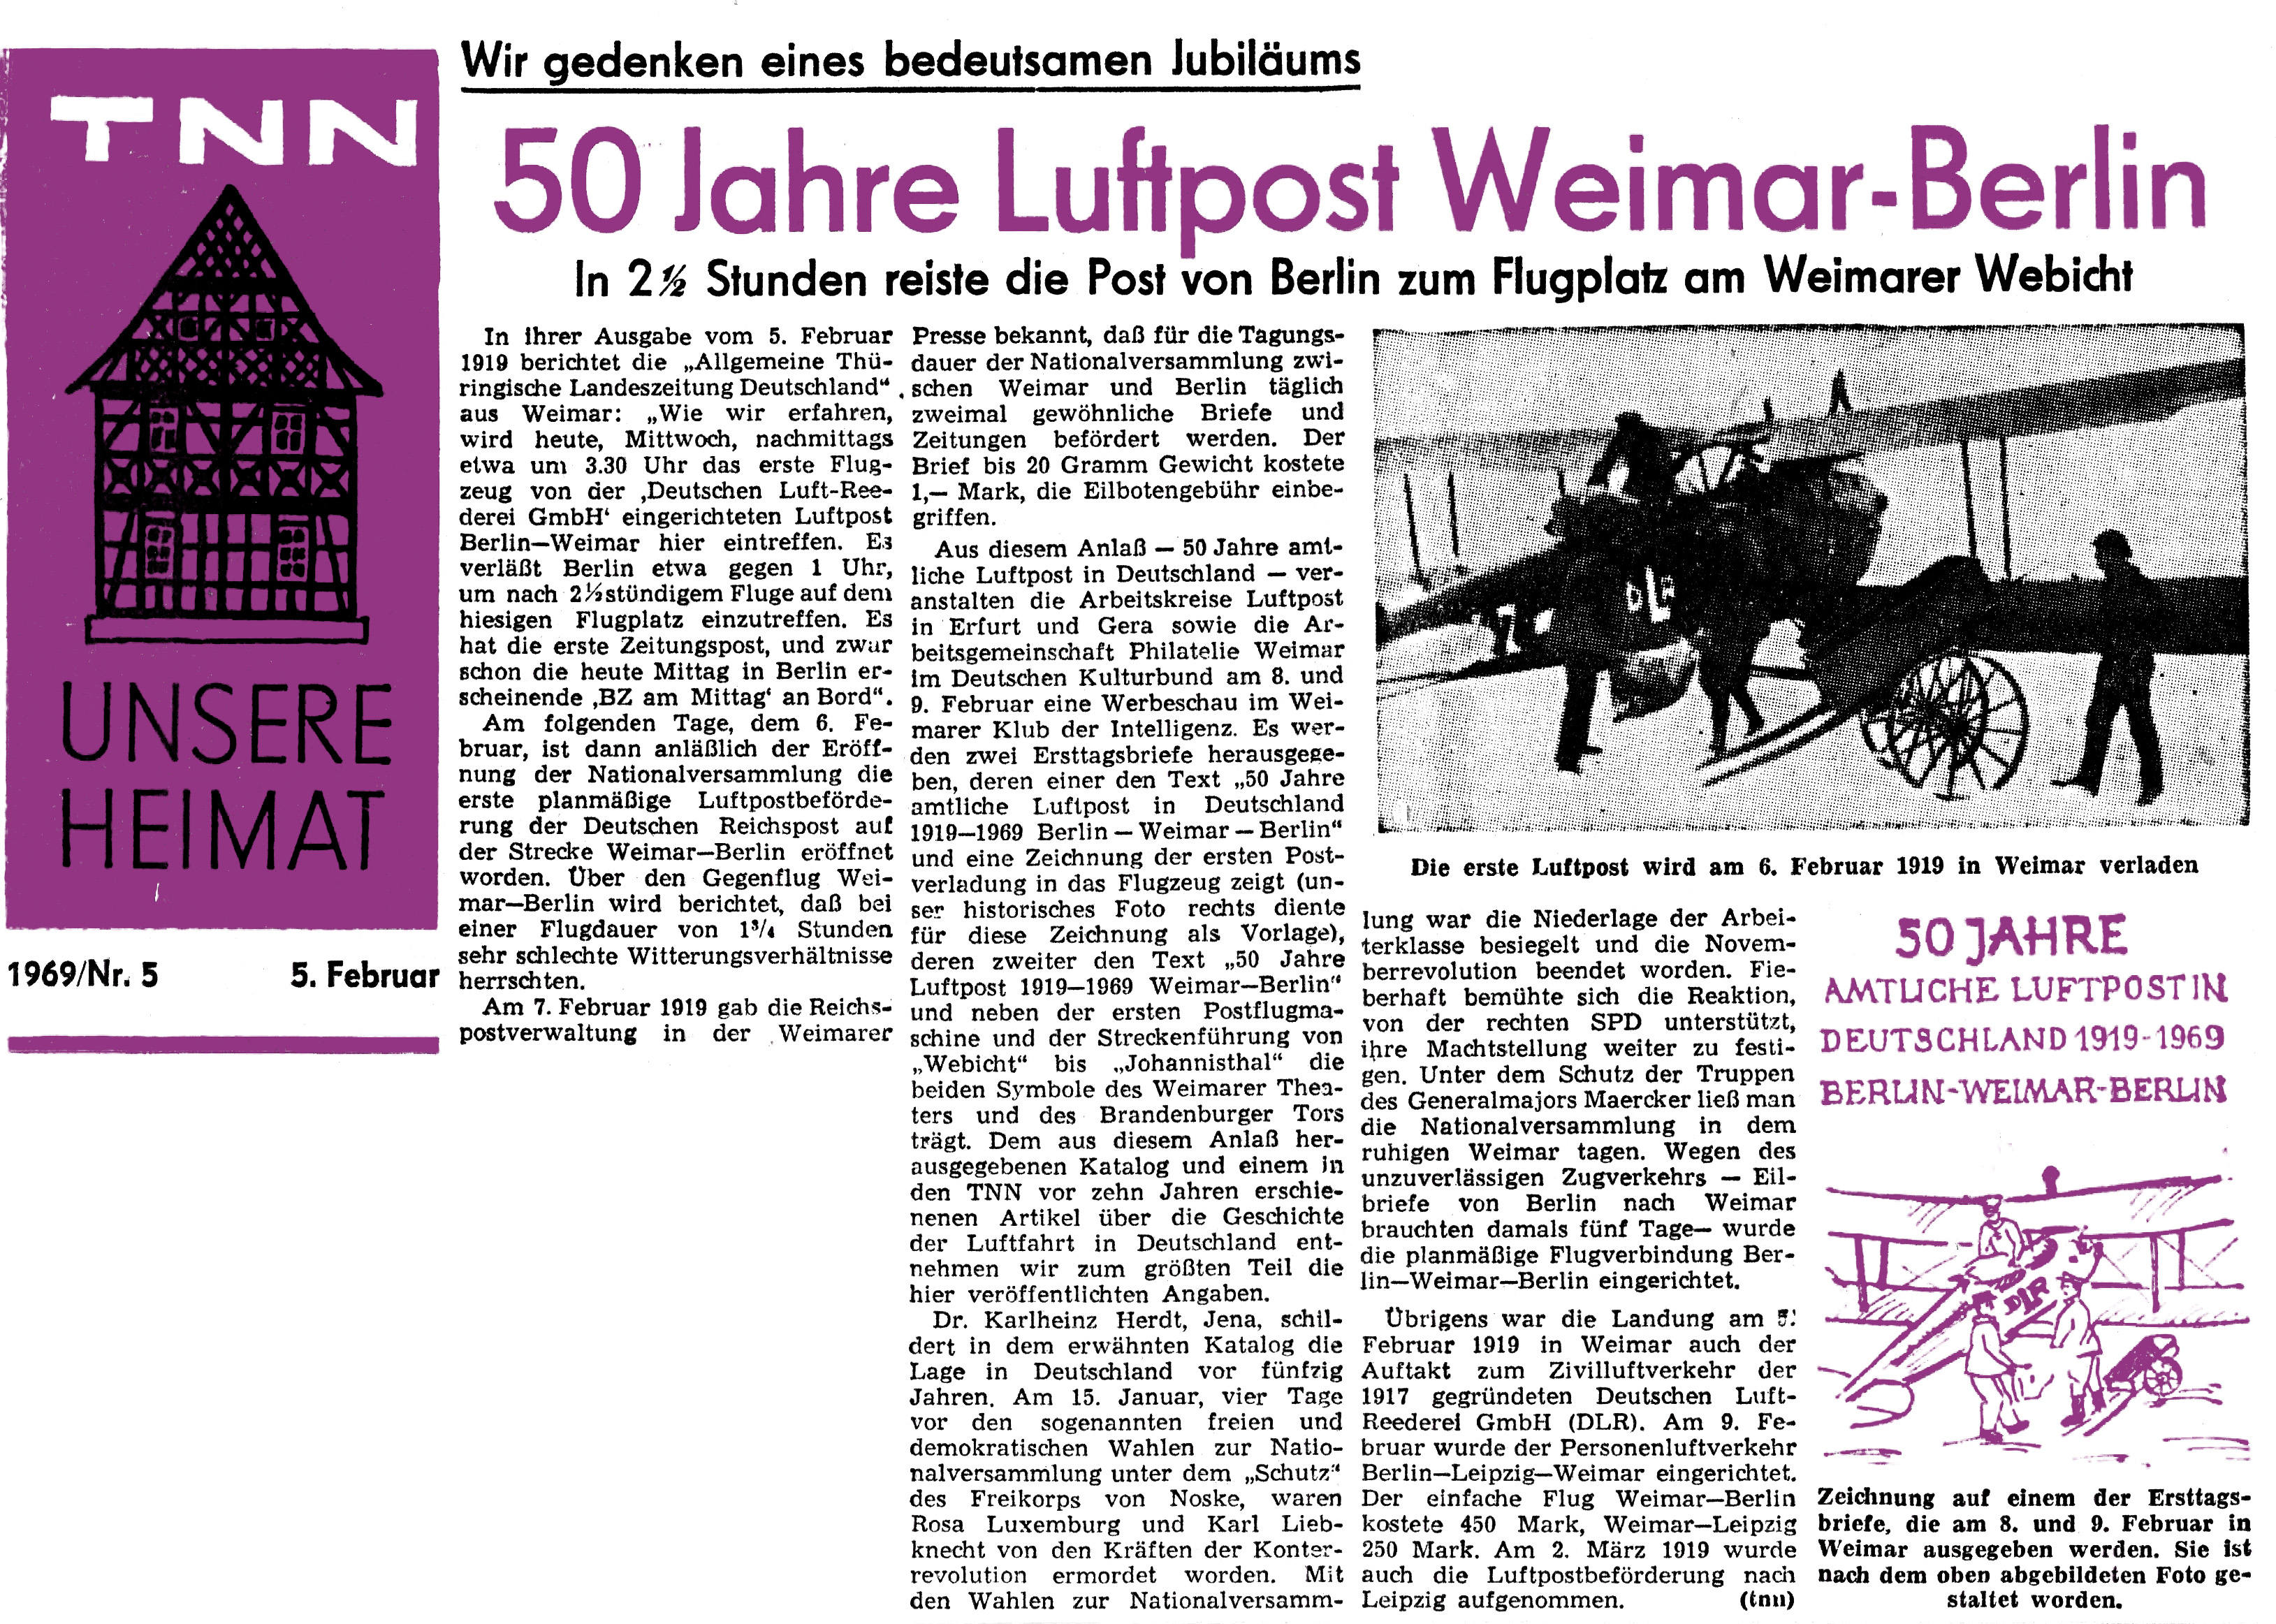 50 Jahre Luftpost Weimar-Berlin